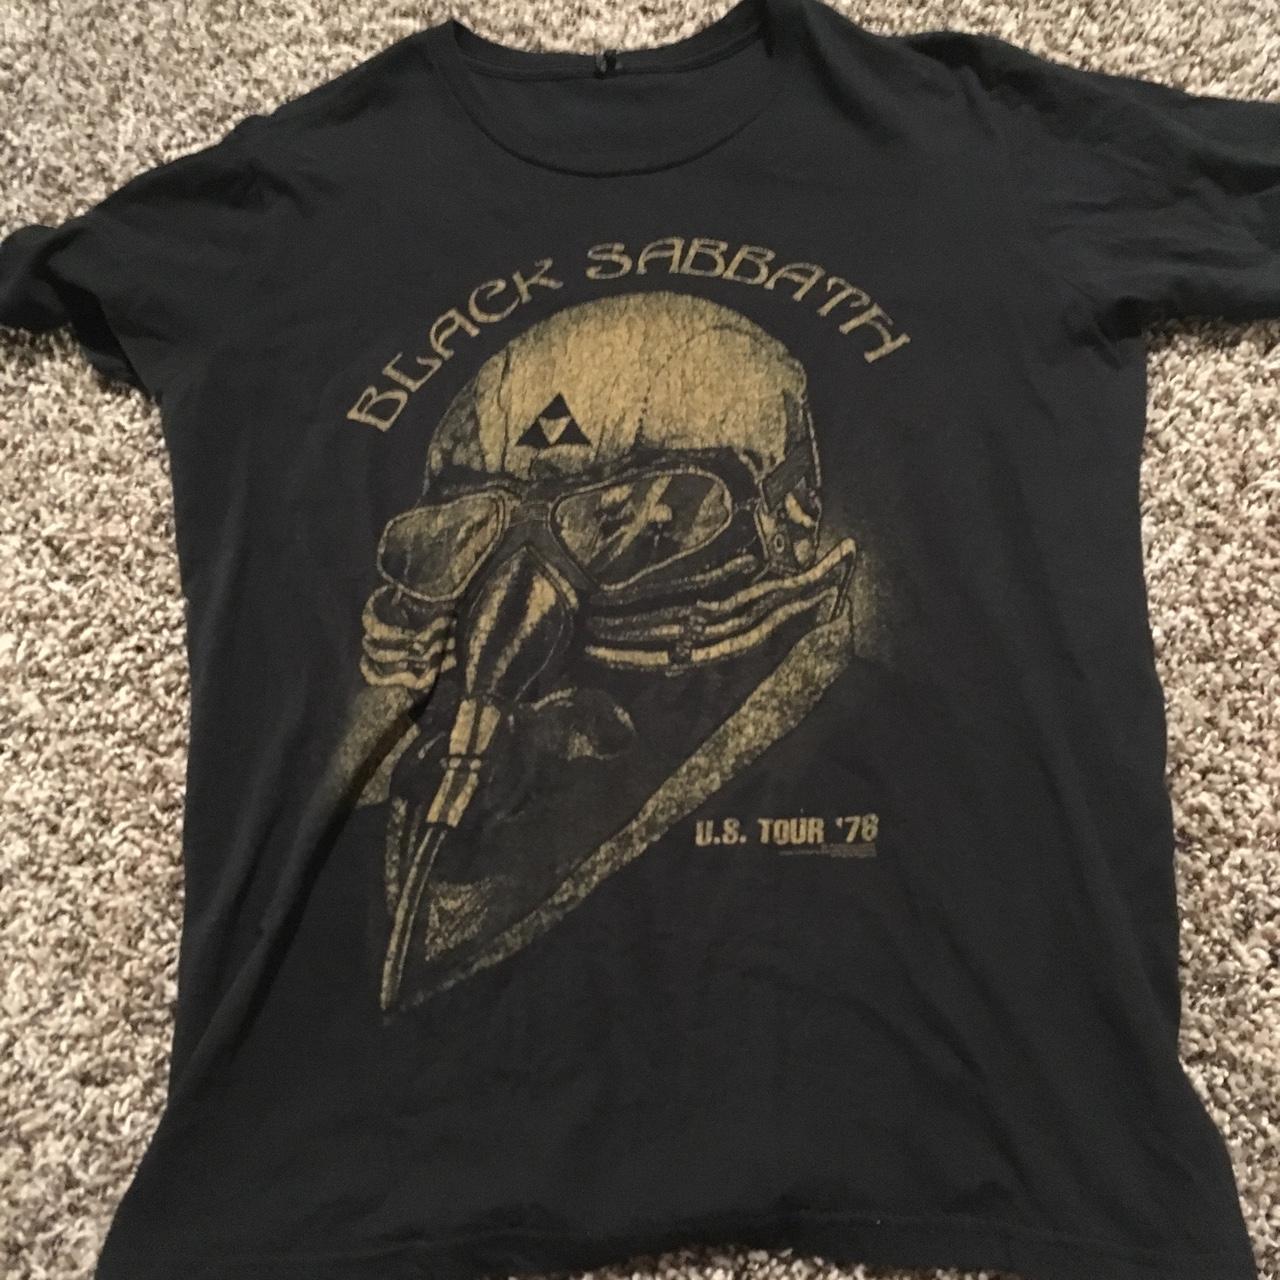 Black Sabbath 1978 Tee - Depop Medium Shirt,... U.S. Tour